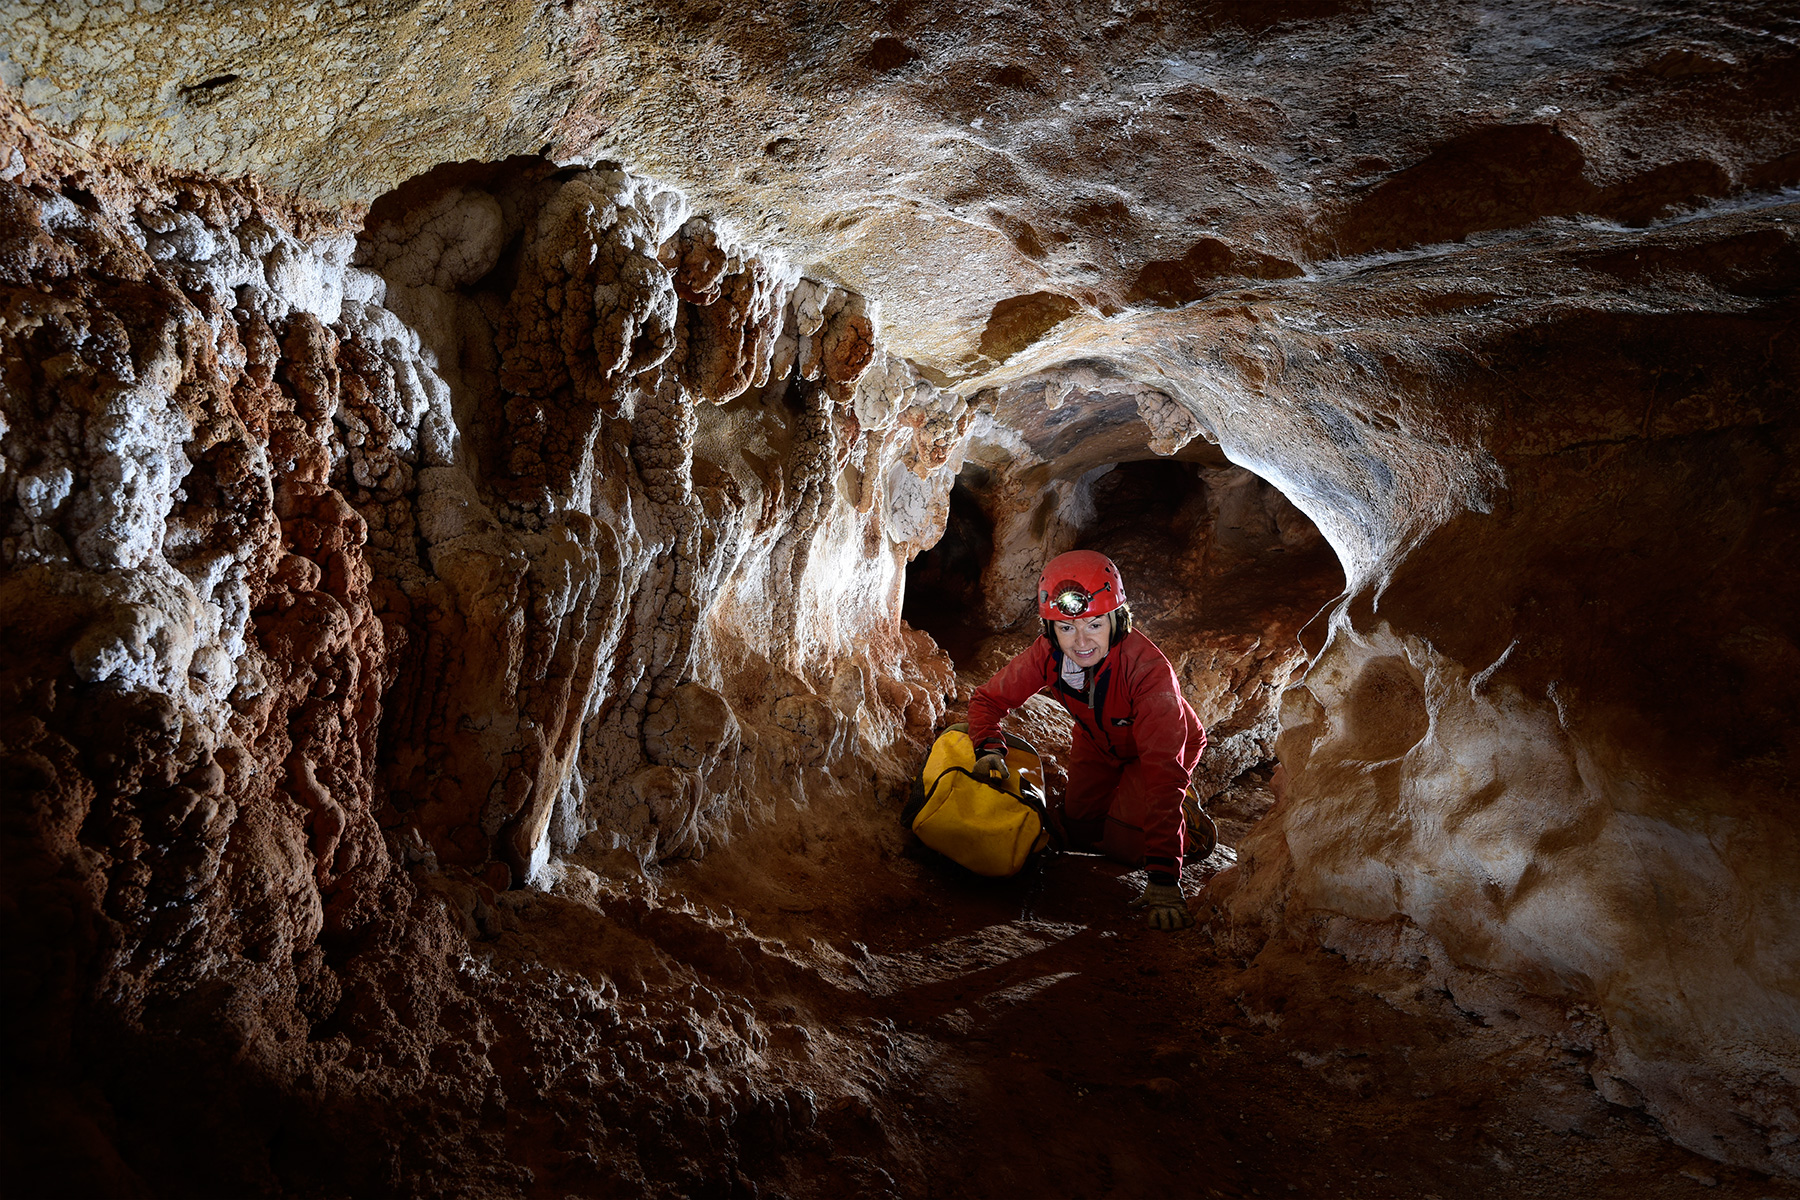 Henning Cave (Jenolan Karst Conservation Reserve, Australie) - Spéléo progressant dans une galerie sèche